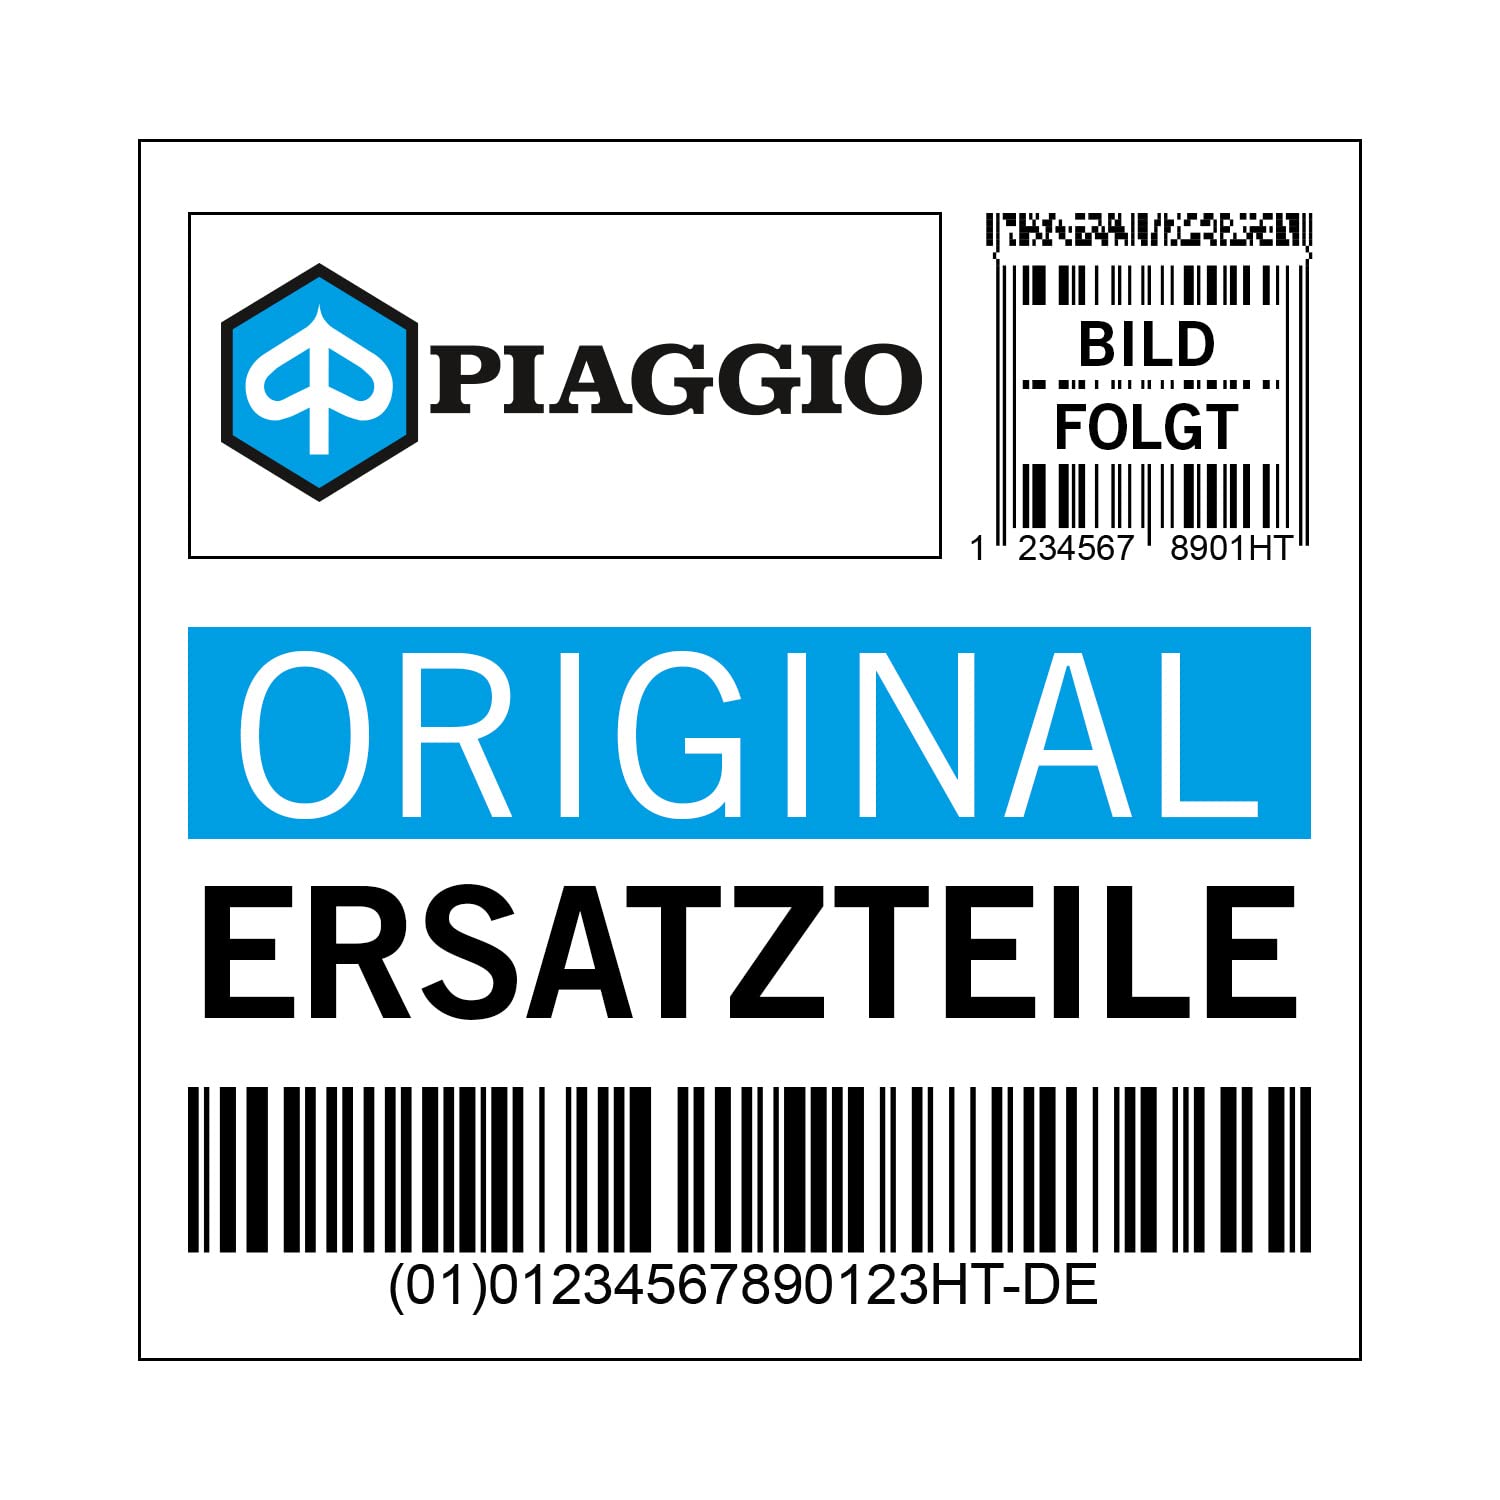 Abdeckung Piaggio, links, braun, M9 braun etna 122/A, ohne Dekor, 5A000115000M9 von Maxtuned